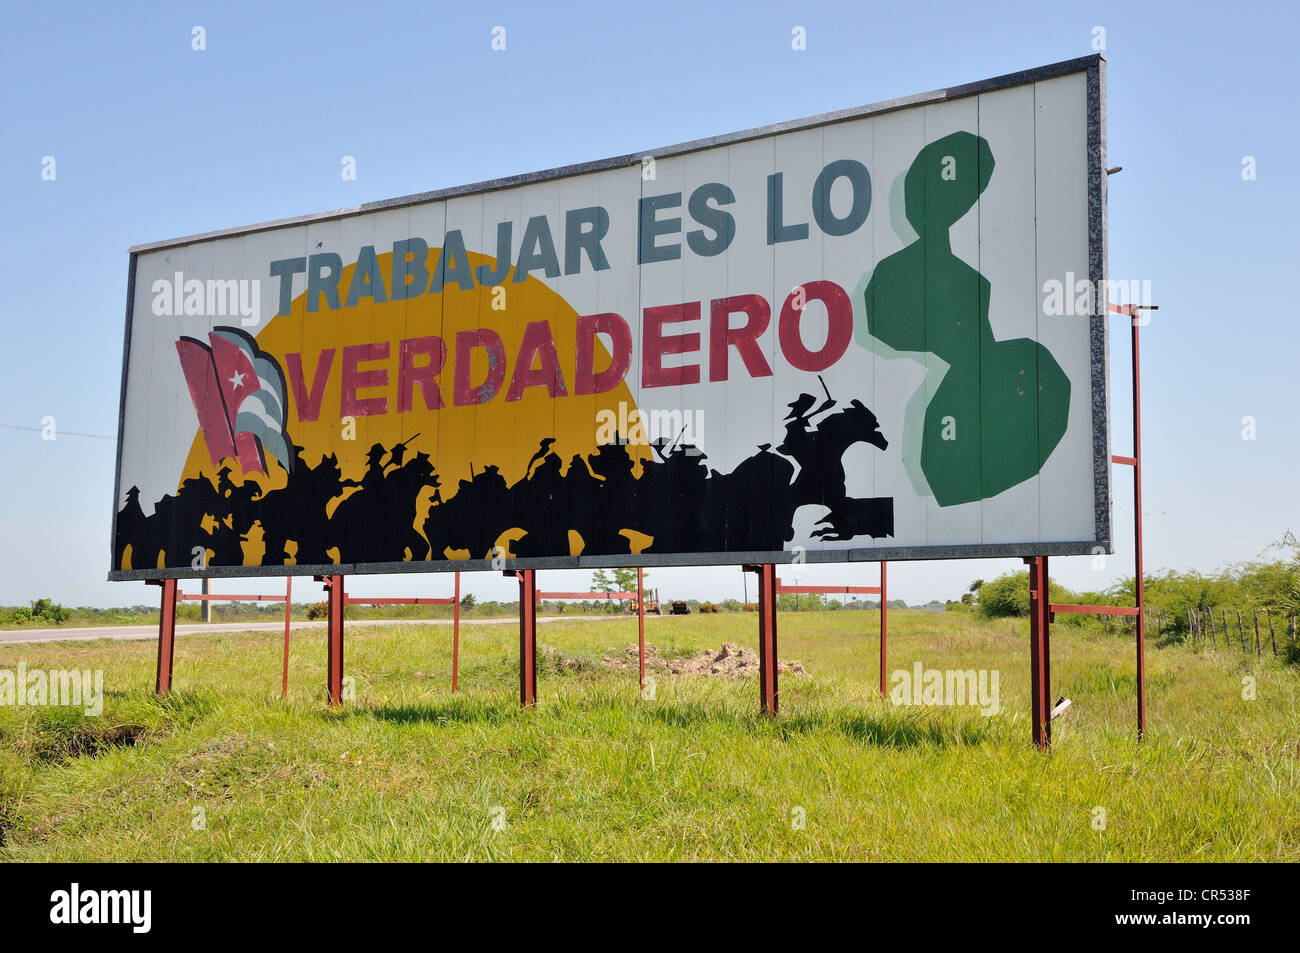 Propaganda revolucionaria, "Trabajar es lo verdadero", Español para "el trabajo es la verdad', cerca de Camagueey, Cuba, El Caribe Foto de stock